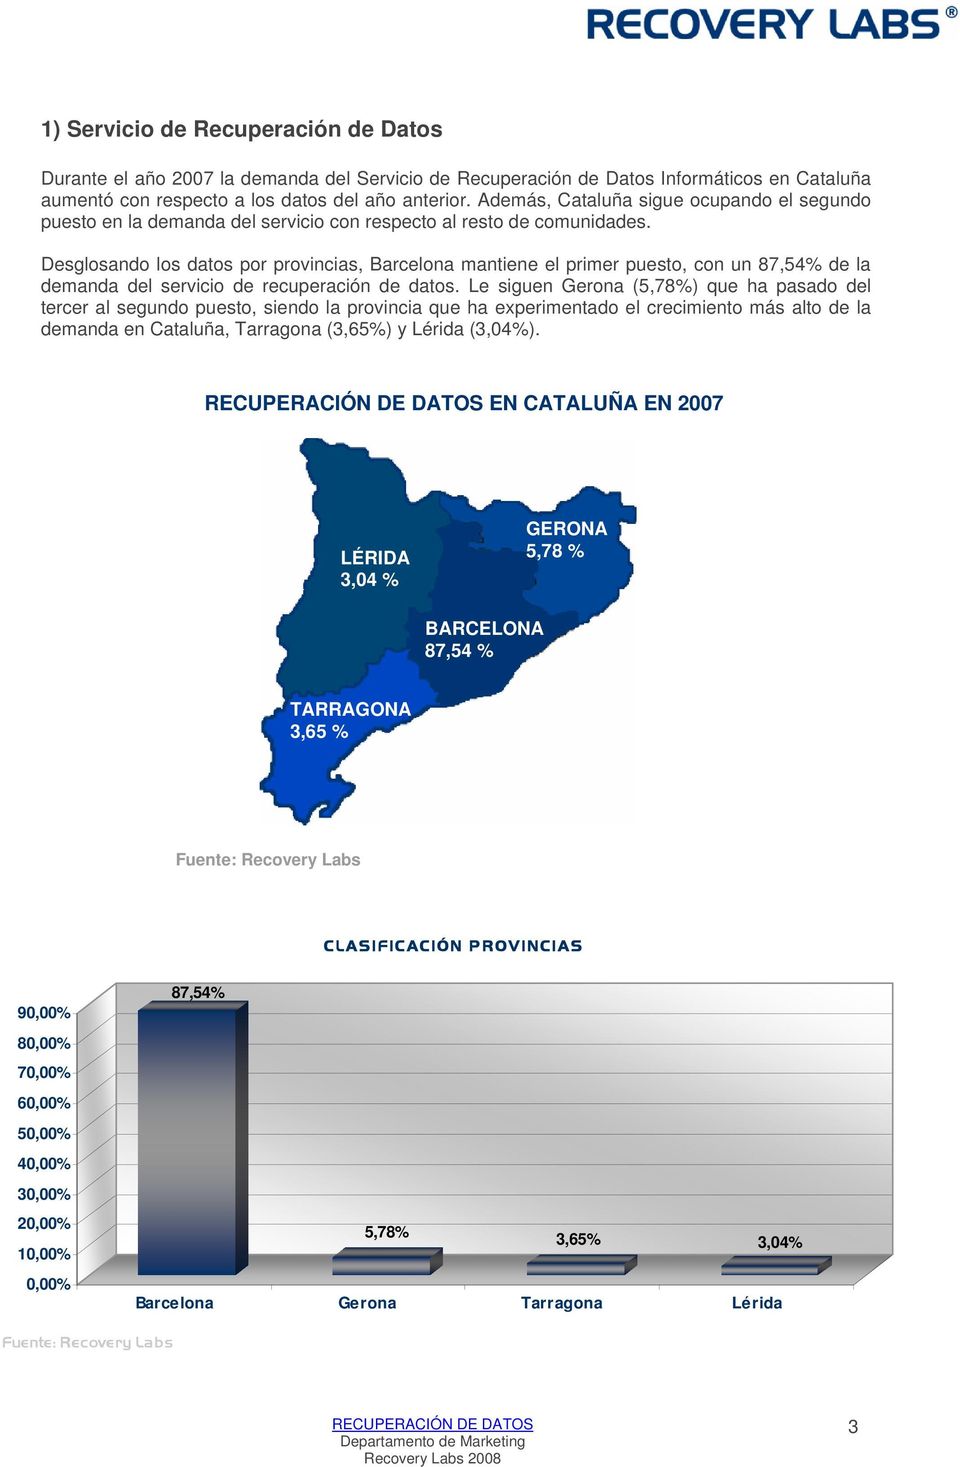 Desglosando los datos por provincias, Barcelona mantiene el primer puesto, con un 87,54% de la demanda del servicio de recuperación de datos.